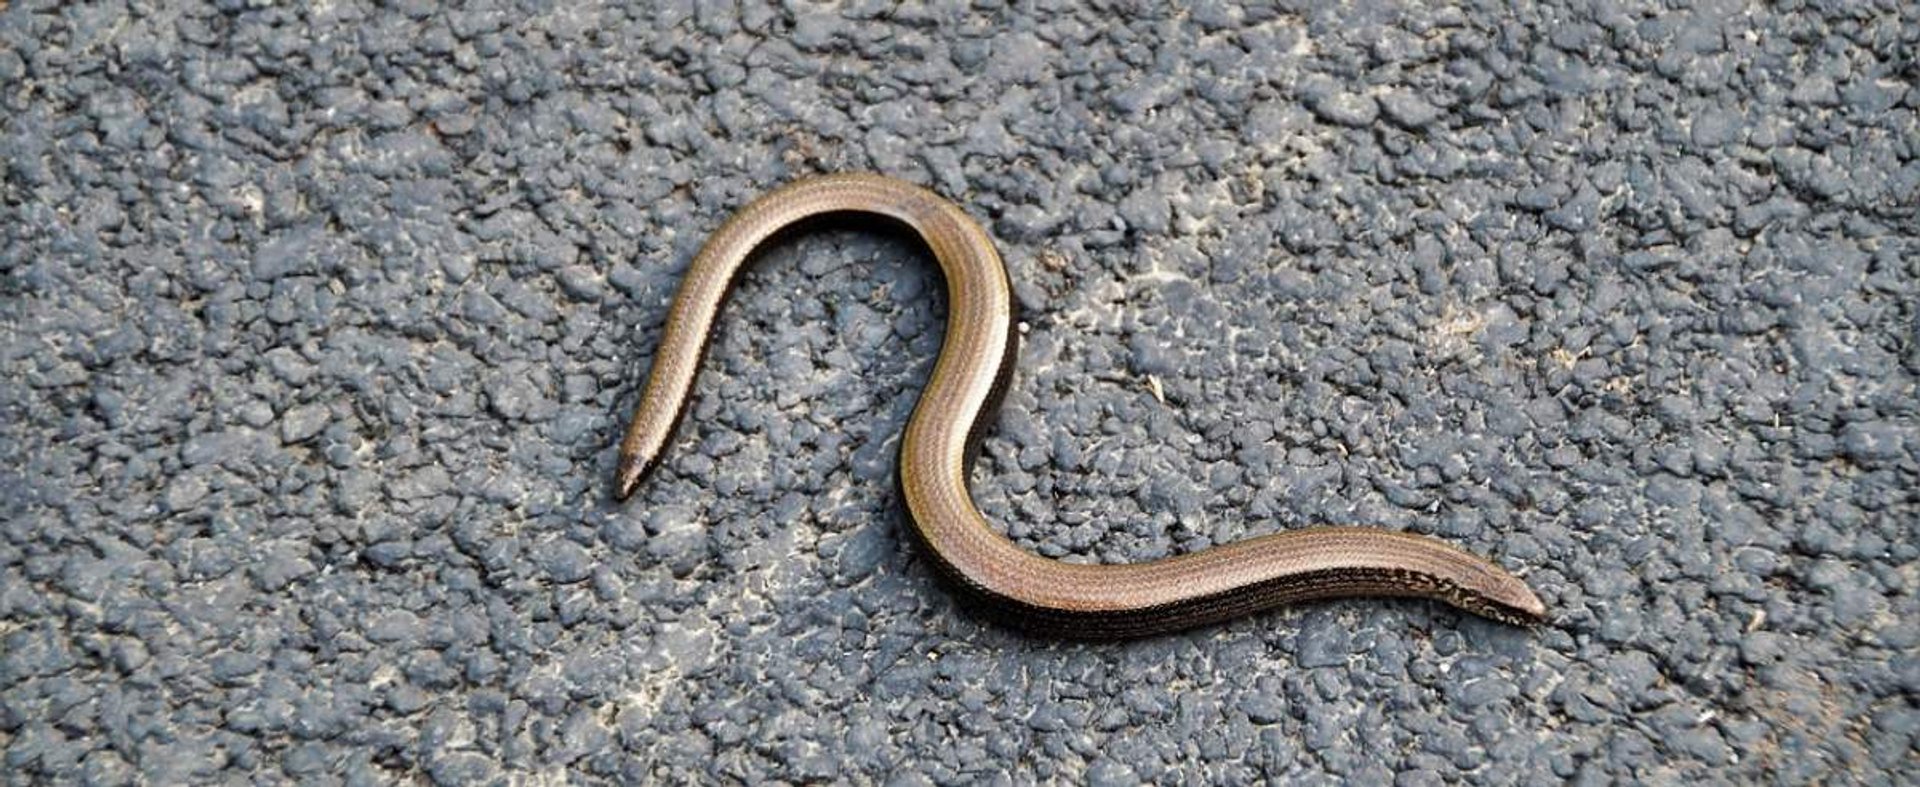 Padalec zwyczajny - jaszczurka często mylona często z wężem